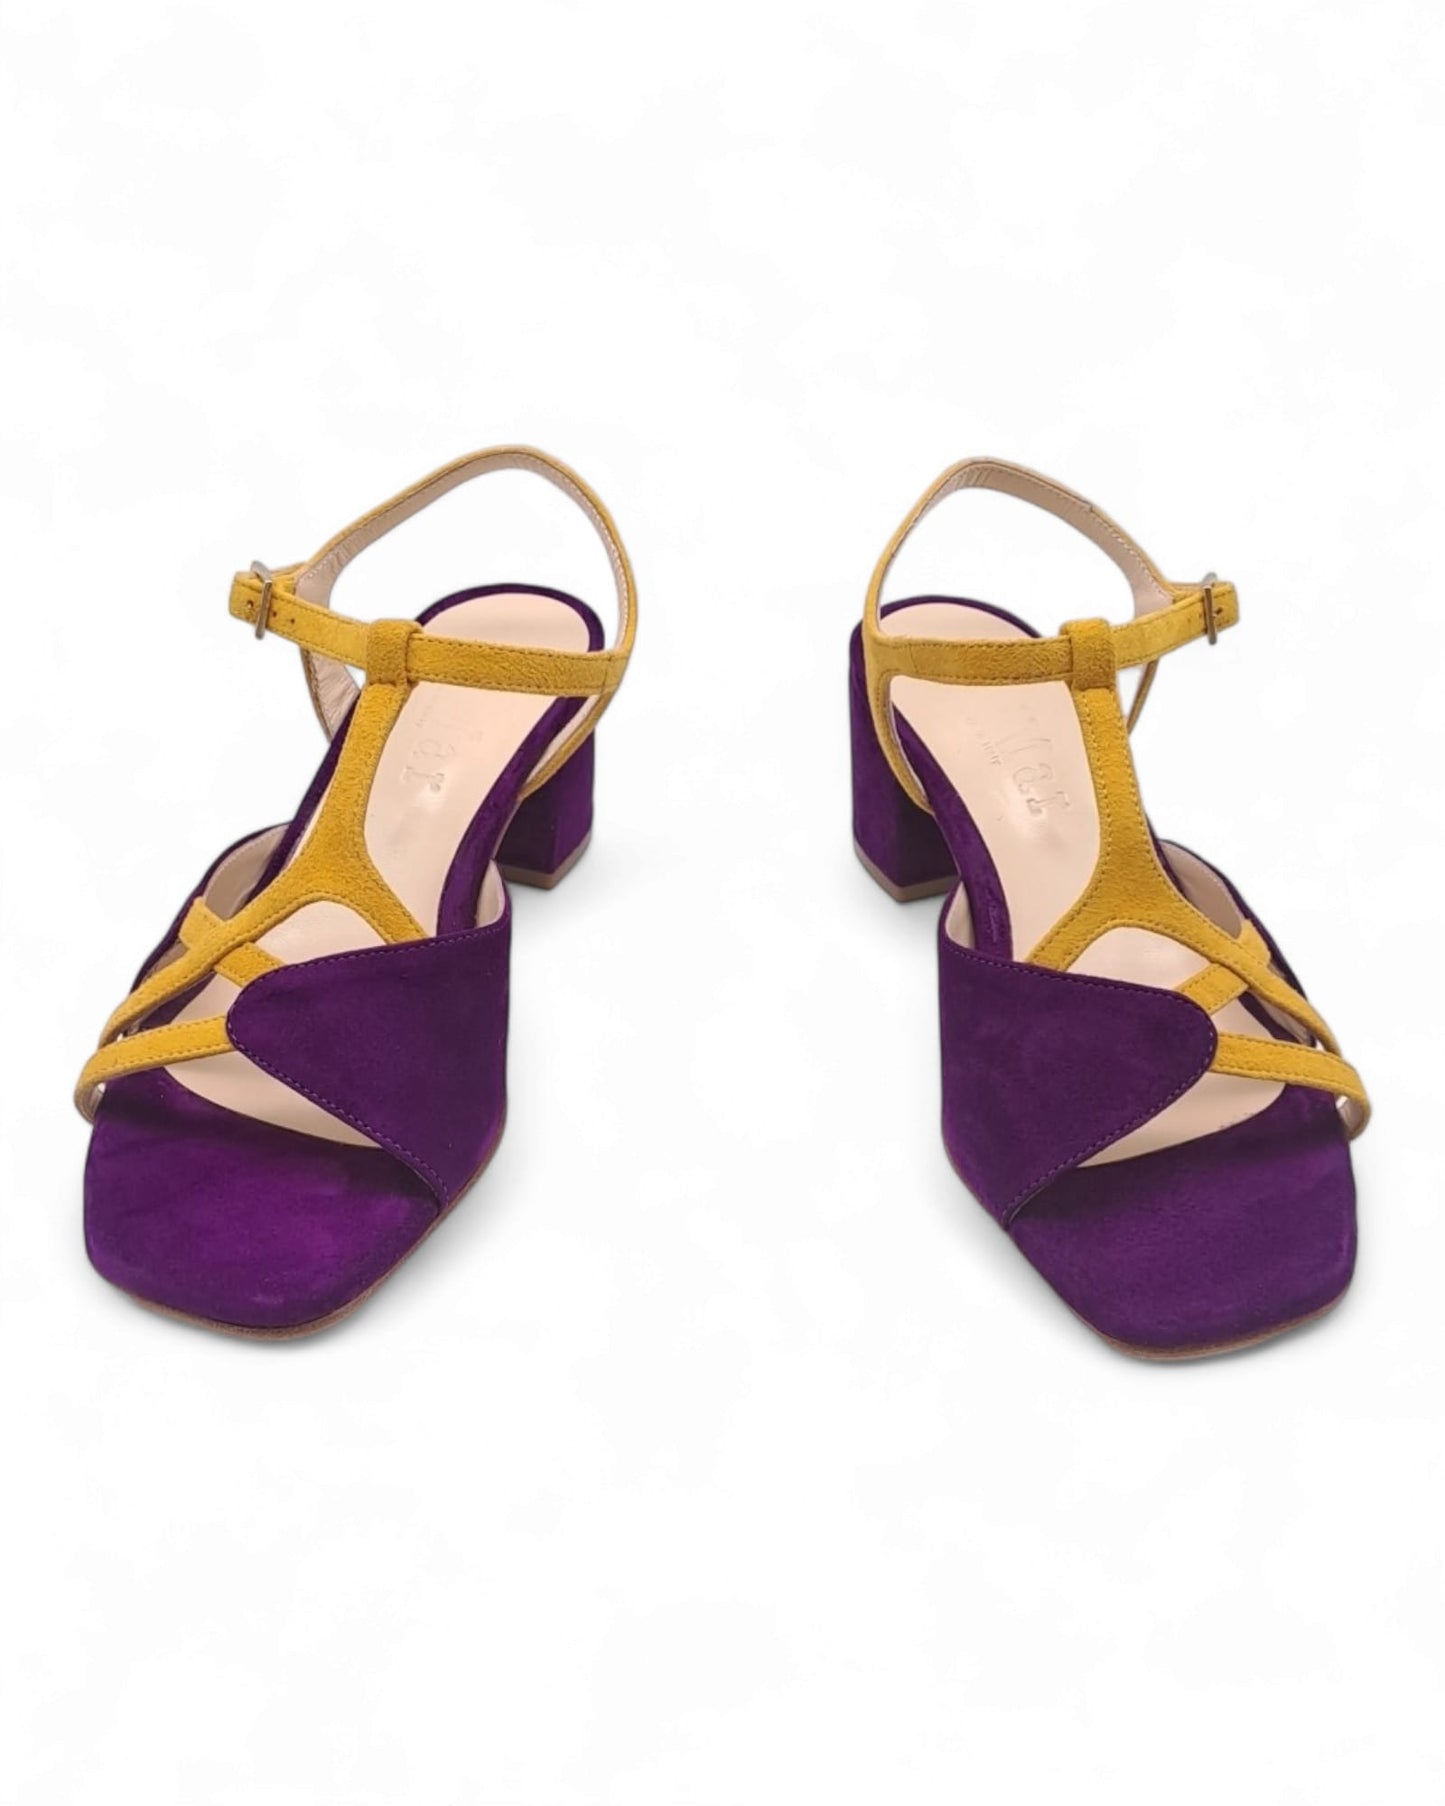 Dolores Sandal Nappa Suede Purple / Saffron